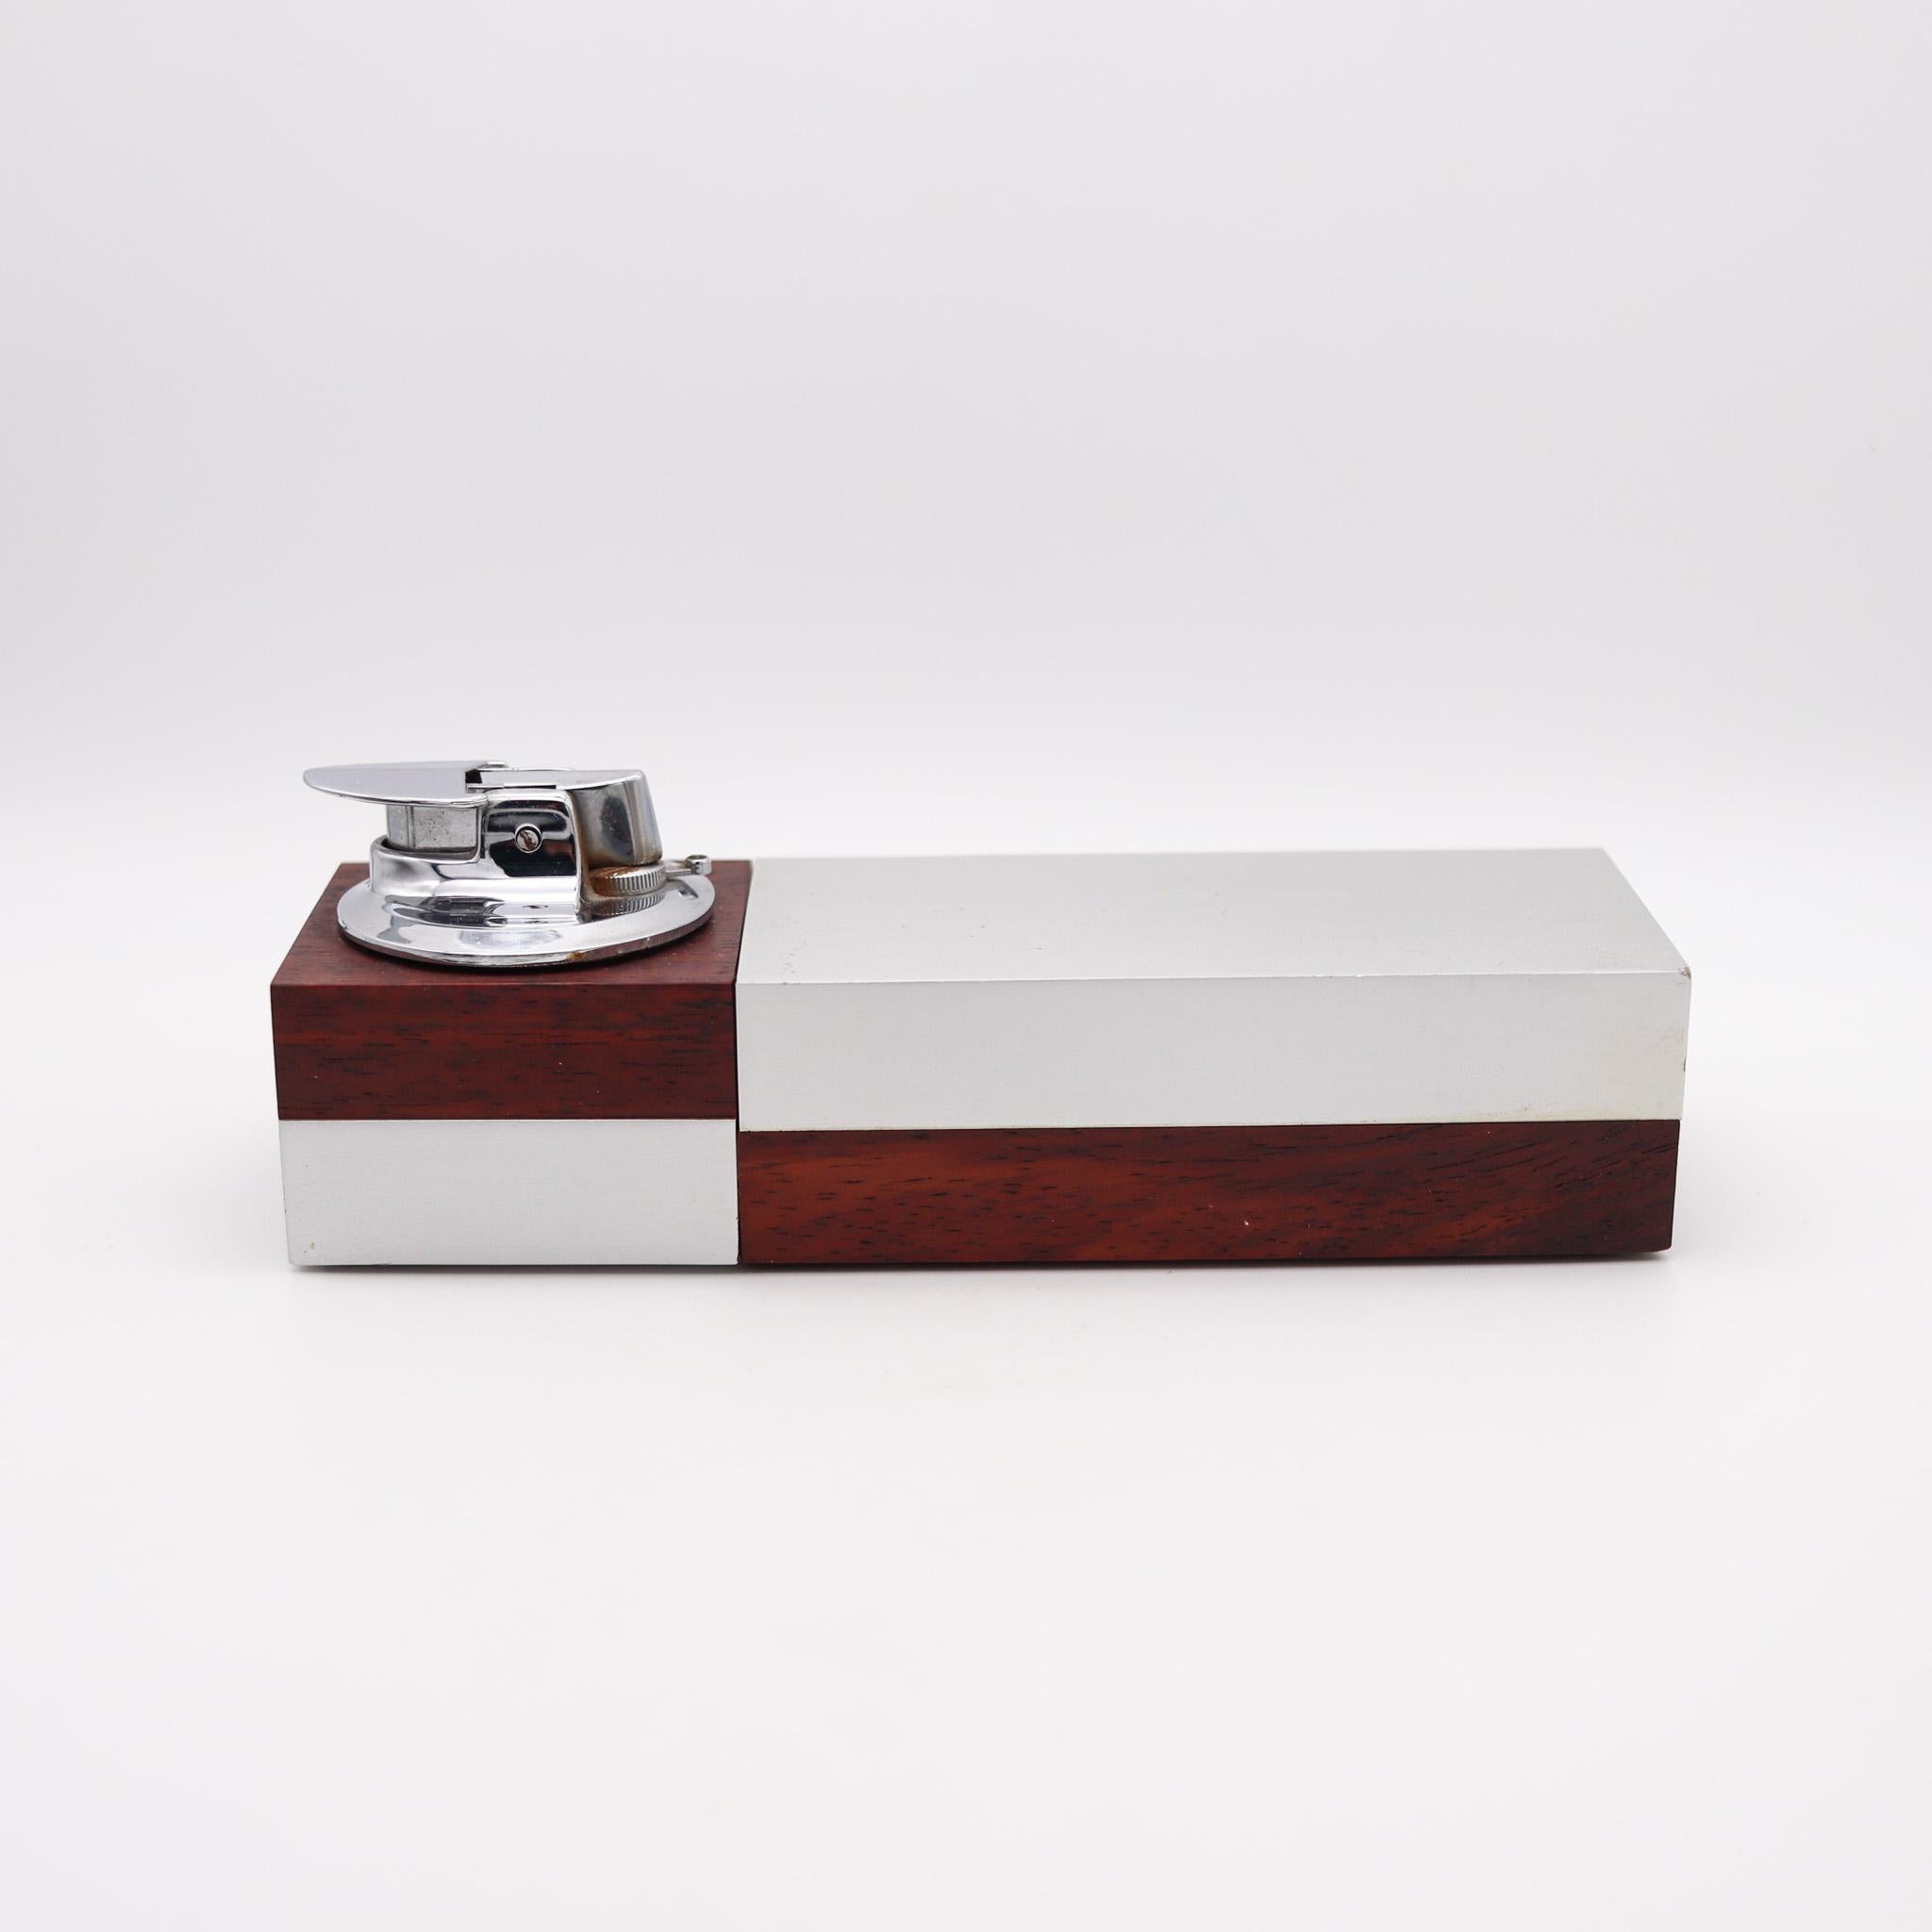 Modernistische geometrische Zigarettenschachtel, entworfen von Ronson.

Eine außergewöhnliche und sehr schöne Schreibtischbox, die in Westdeutschland von The Ronson Co. für Scandia hergestellt wurde. Dieses Stück wurde in der Mitte des Jahrhunderts,